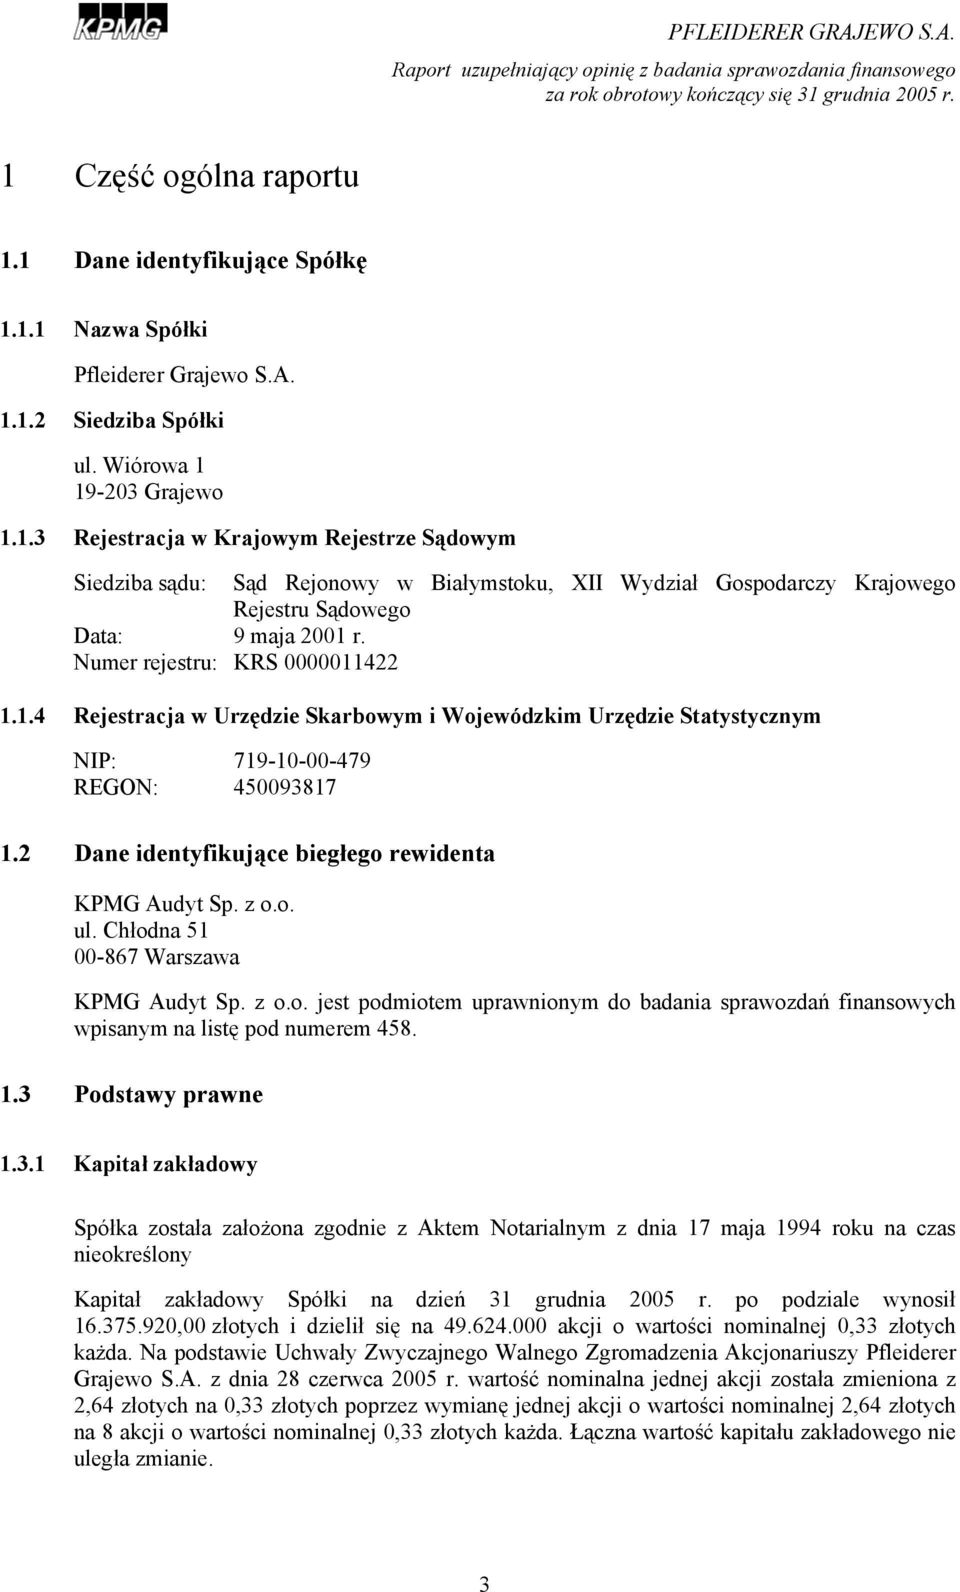 z o.o. ul. Chłodna 51 00-867 Warszawa KPMG Audyt Sp. z o.o. jest podmiotem uprawnionym do badania sprawozdań finansowych wpisanym na listę pod numerem 458. 1.3 